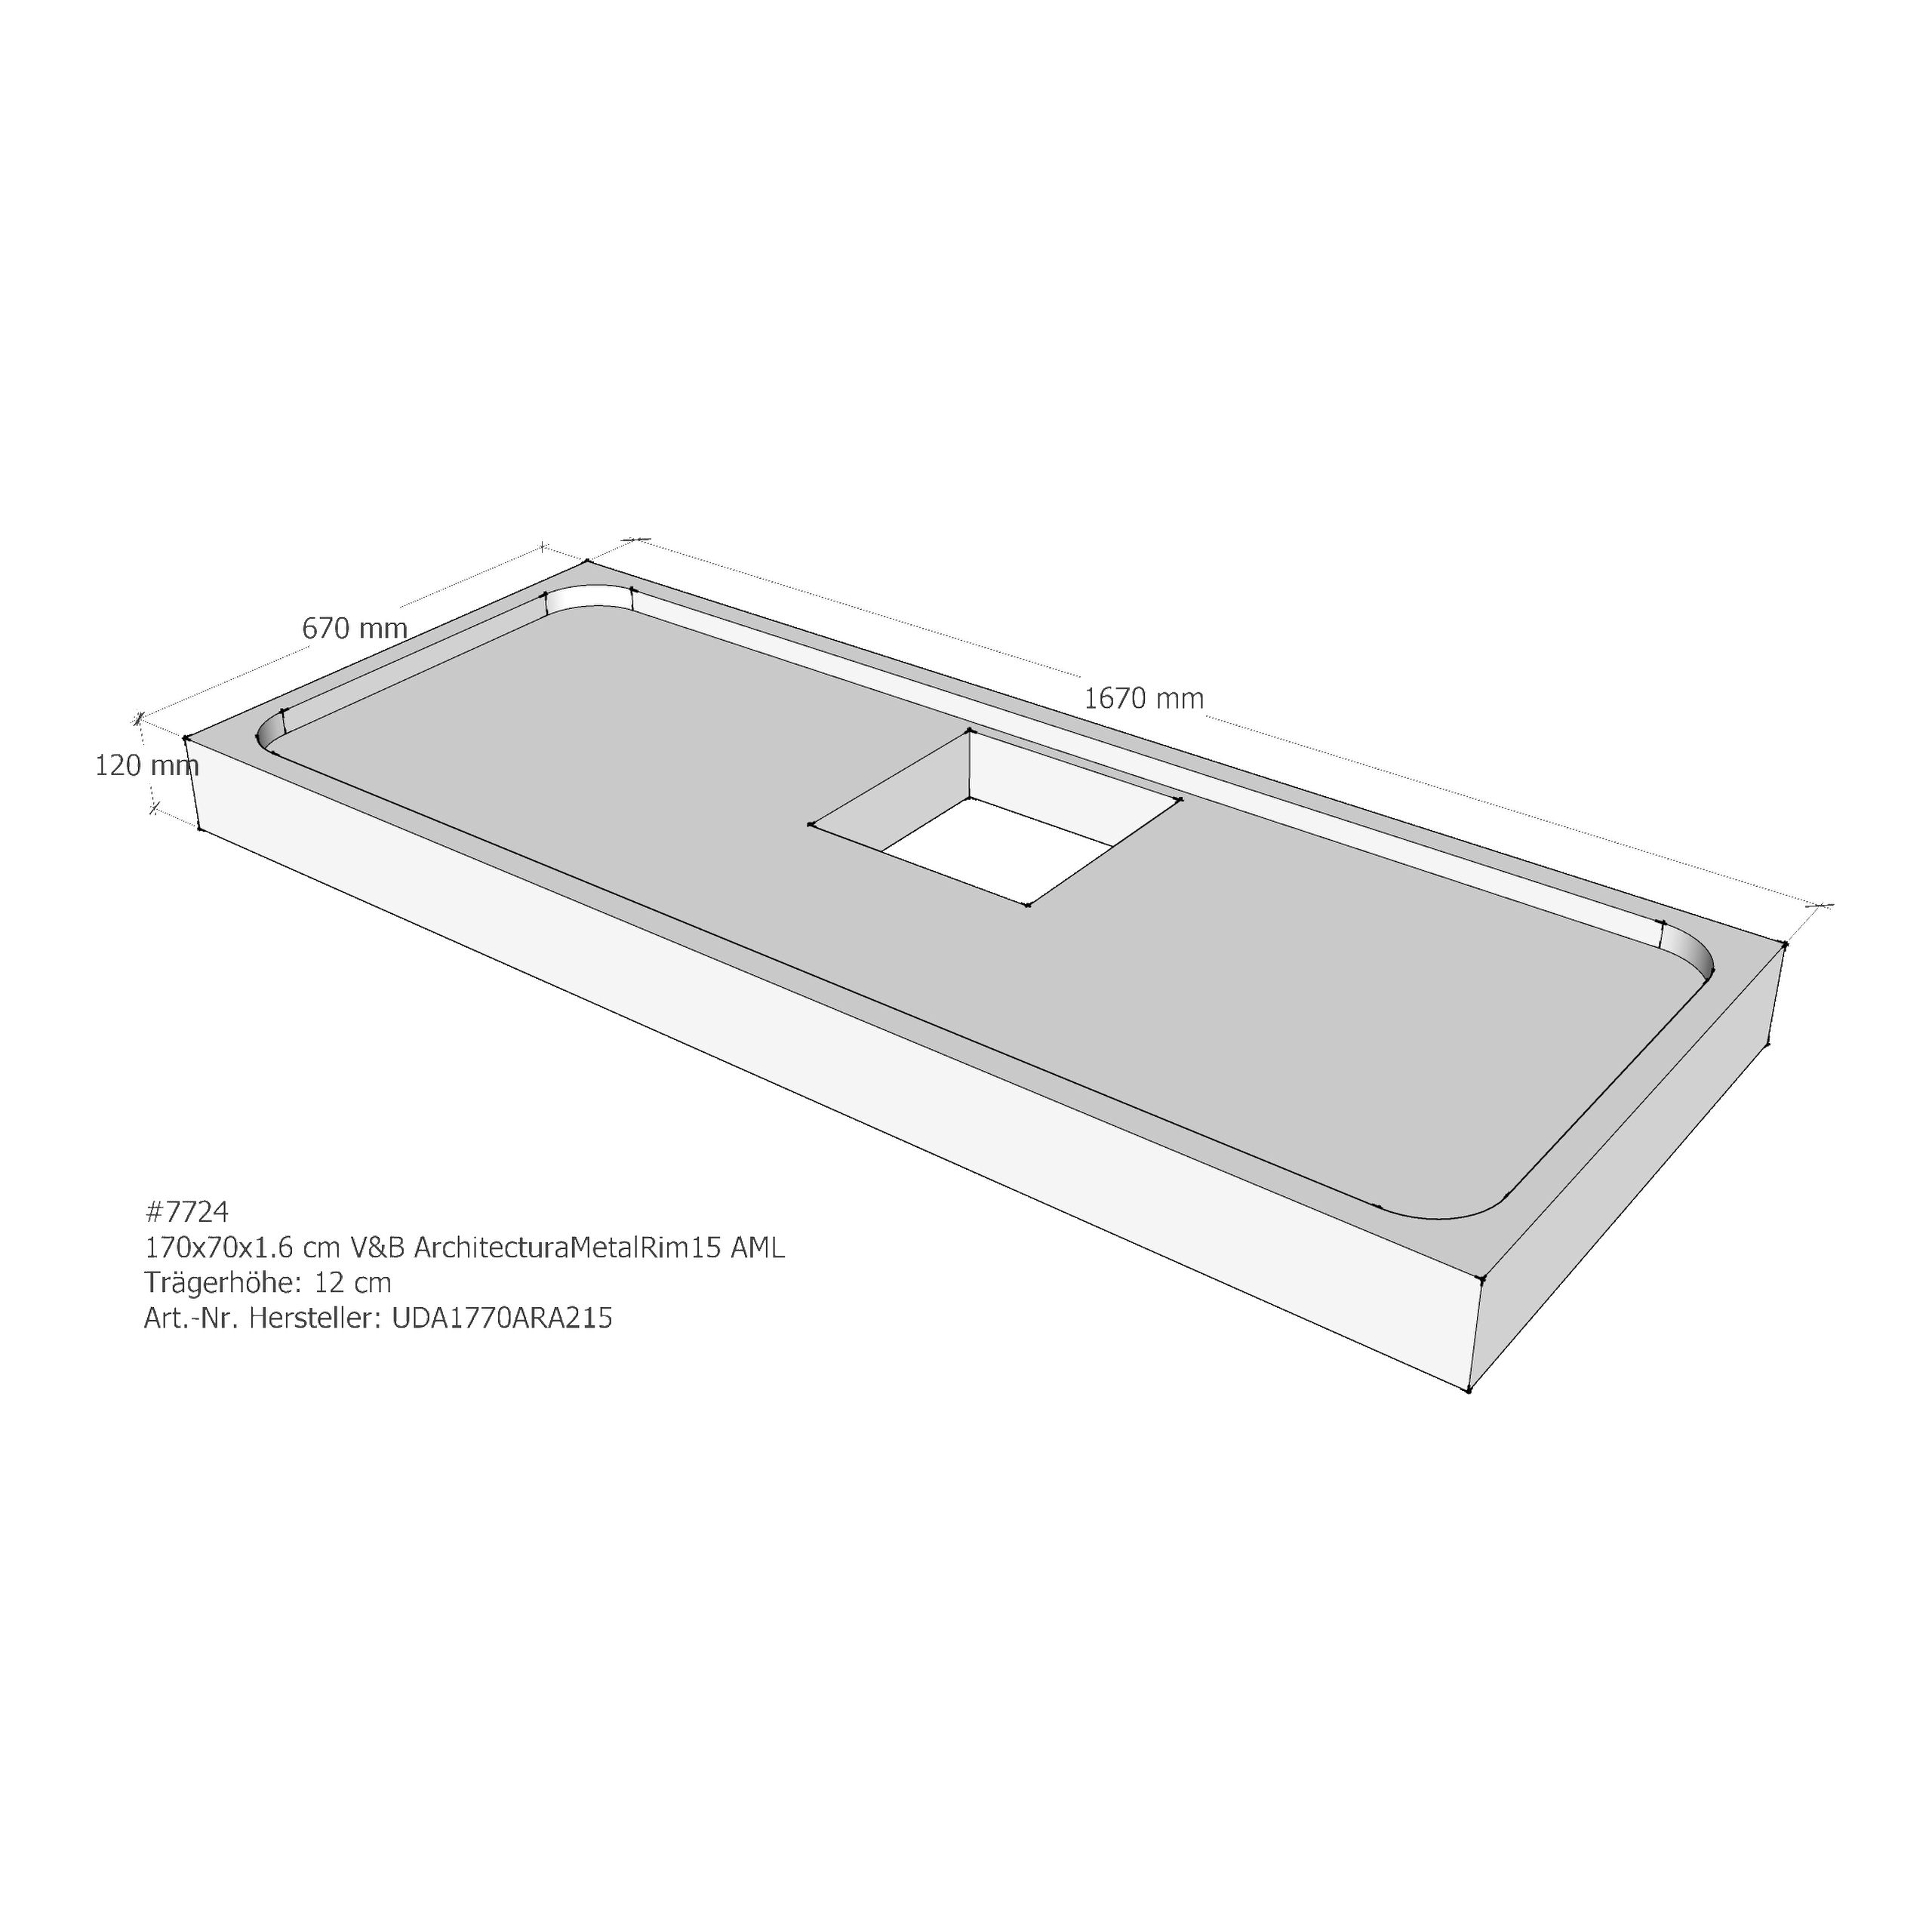 Duschwannenträger für Villeroy & Boch ArchitecturaMetalRim15 170 × 70 × 1,6 cm